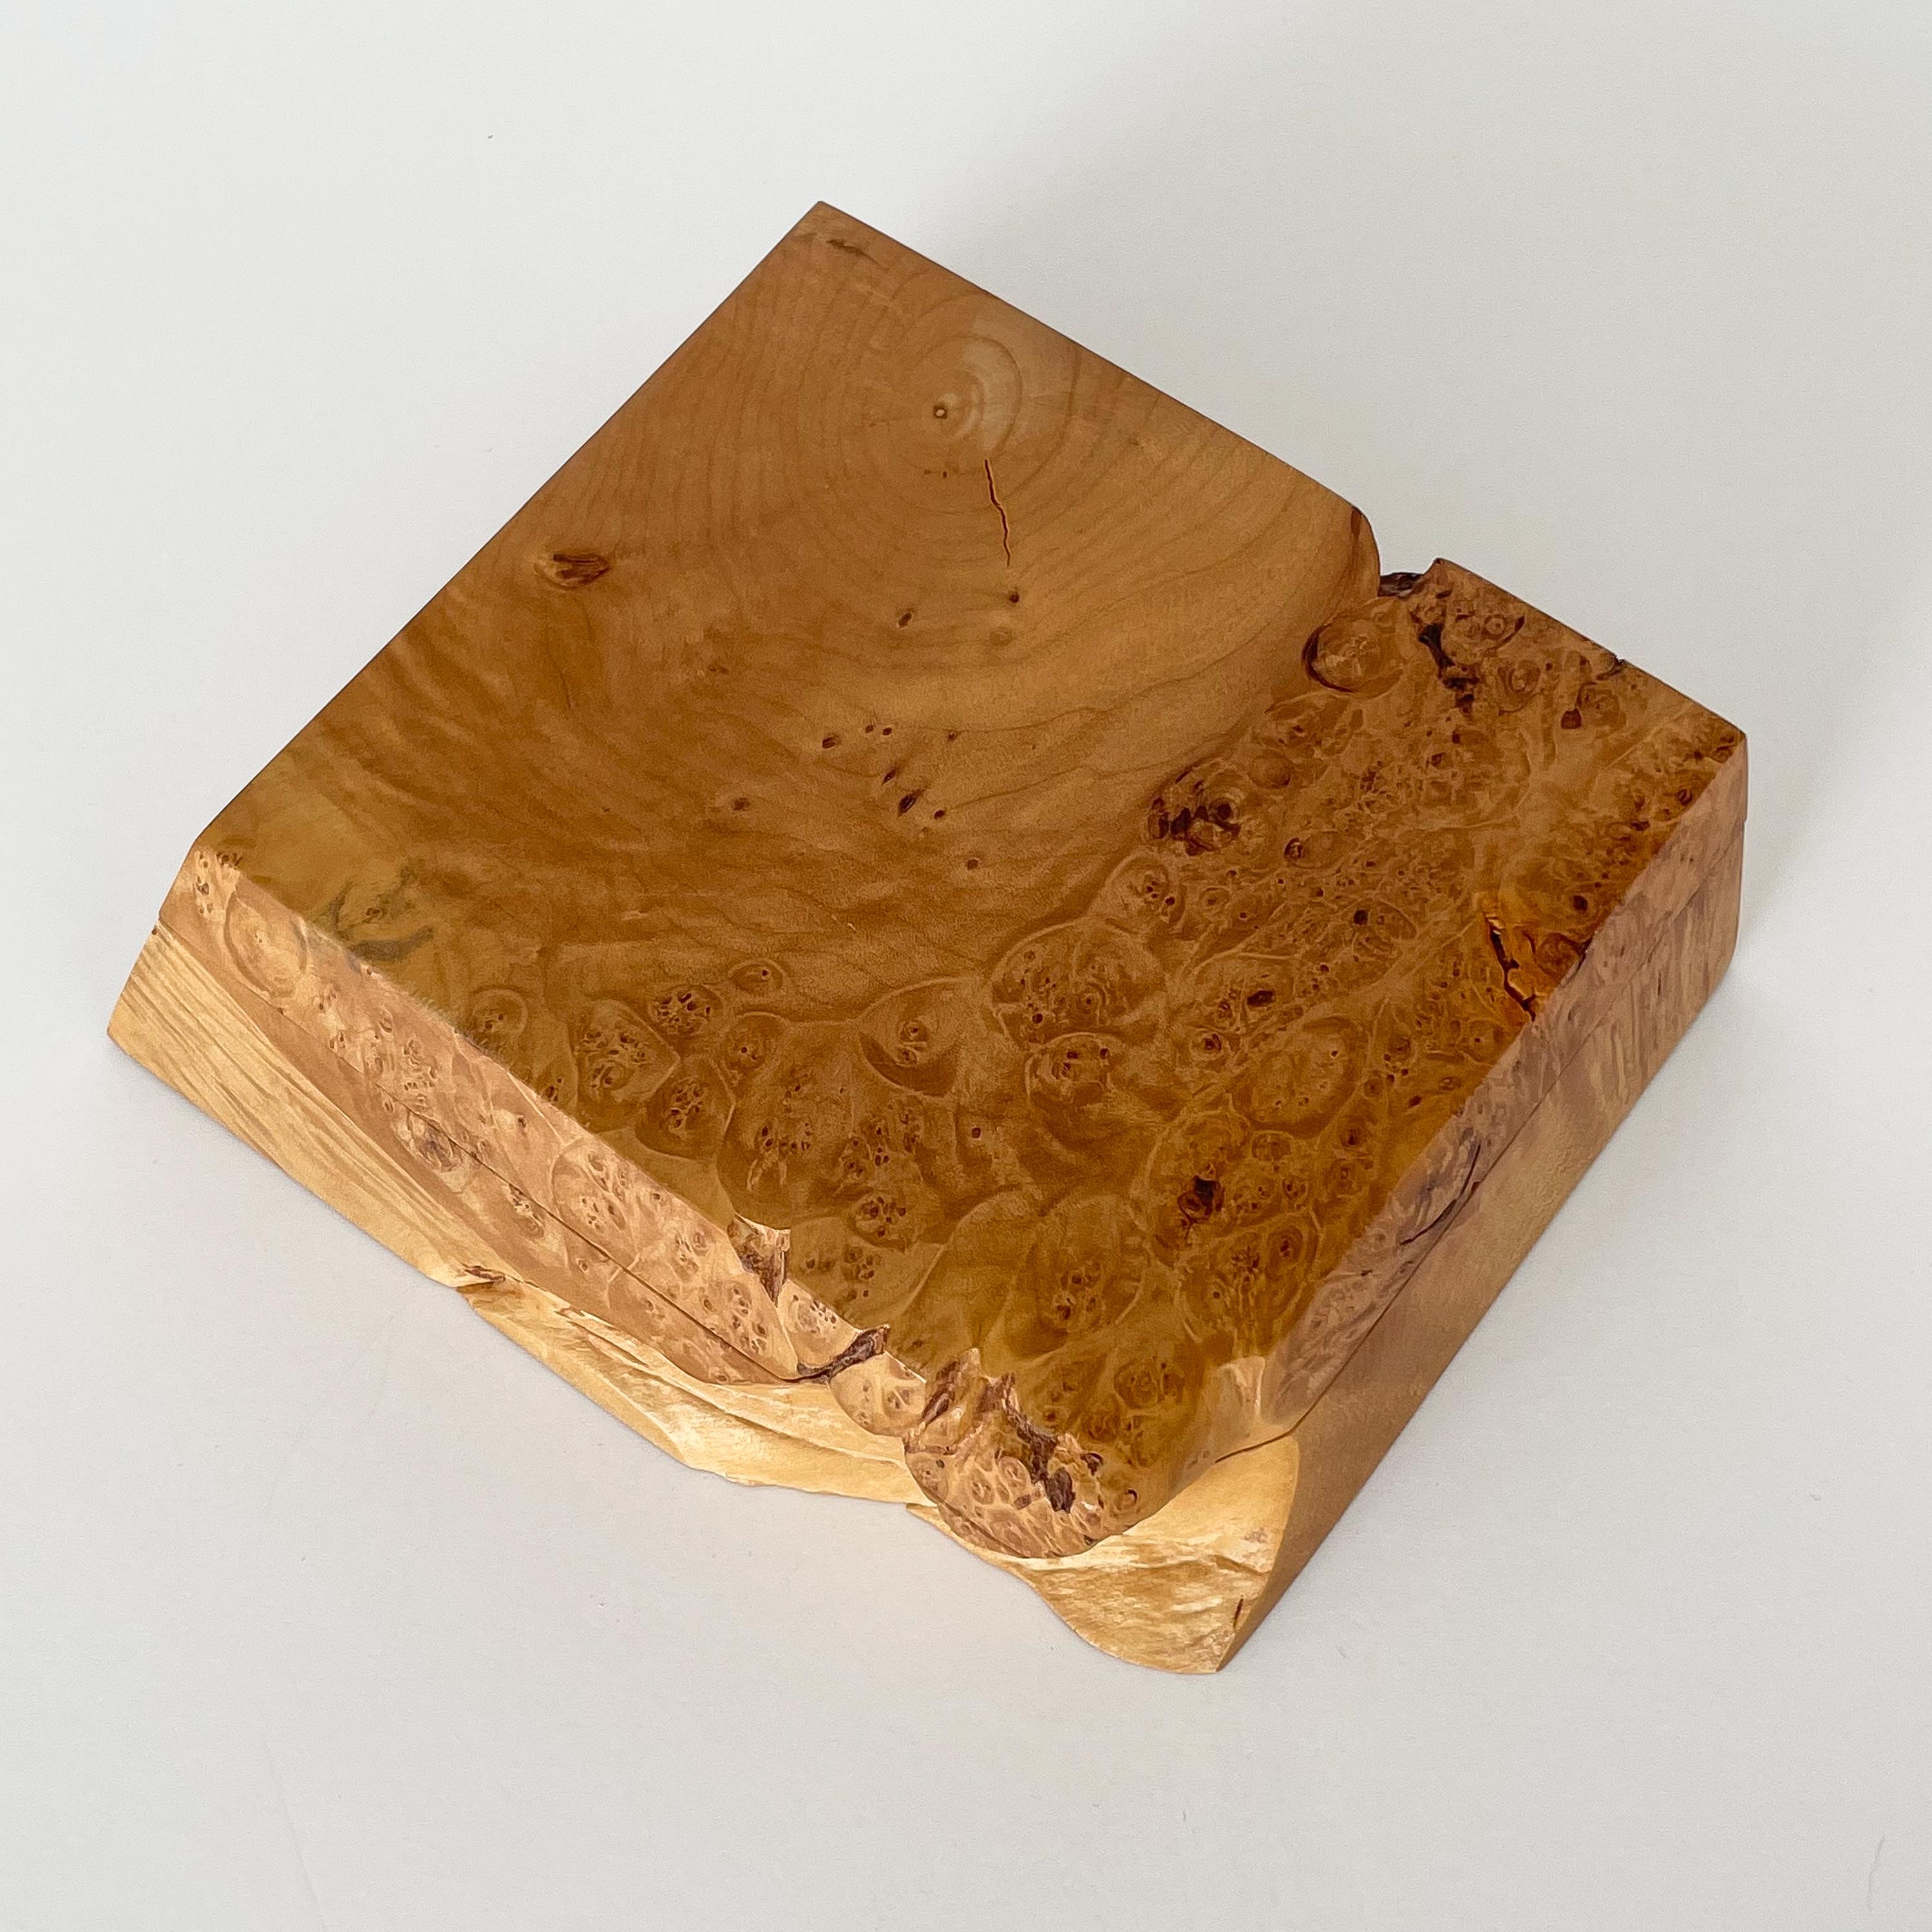 American Craftsman Michael Elkan Studio Craft Carved Burl Wood Box